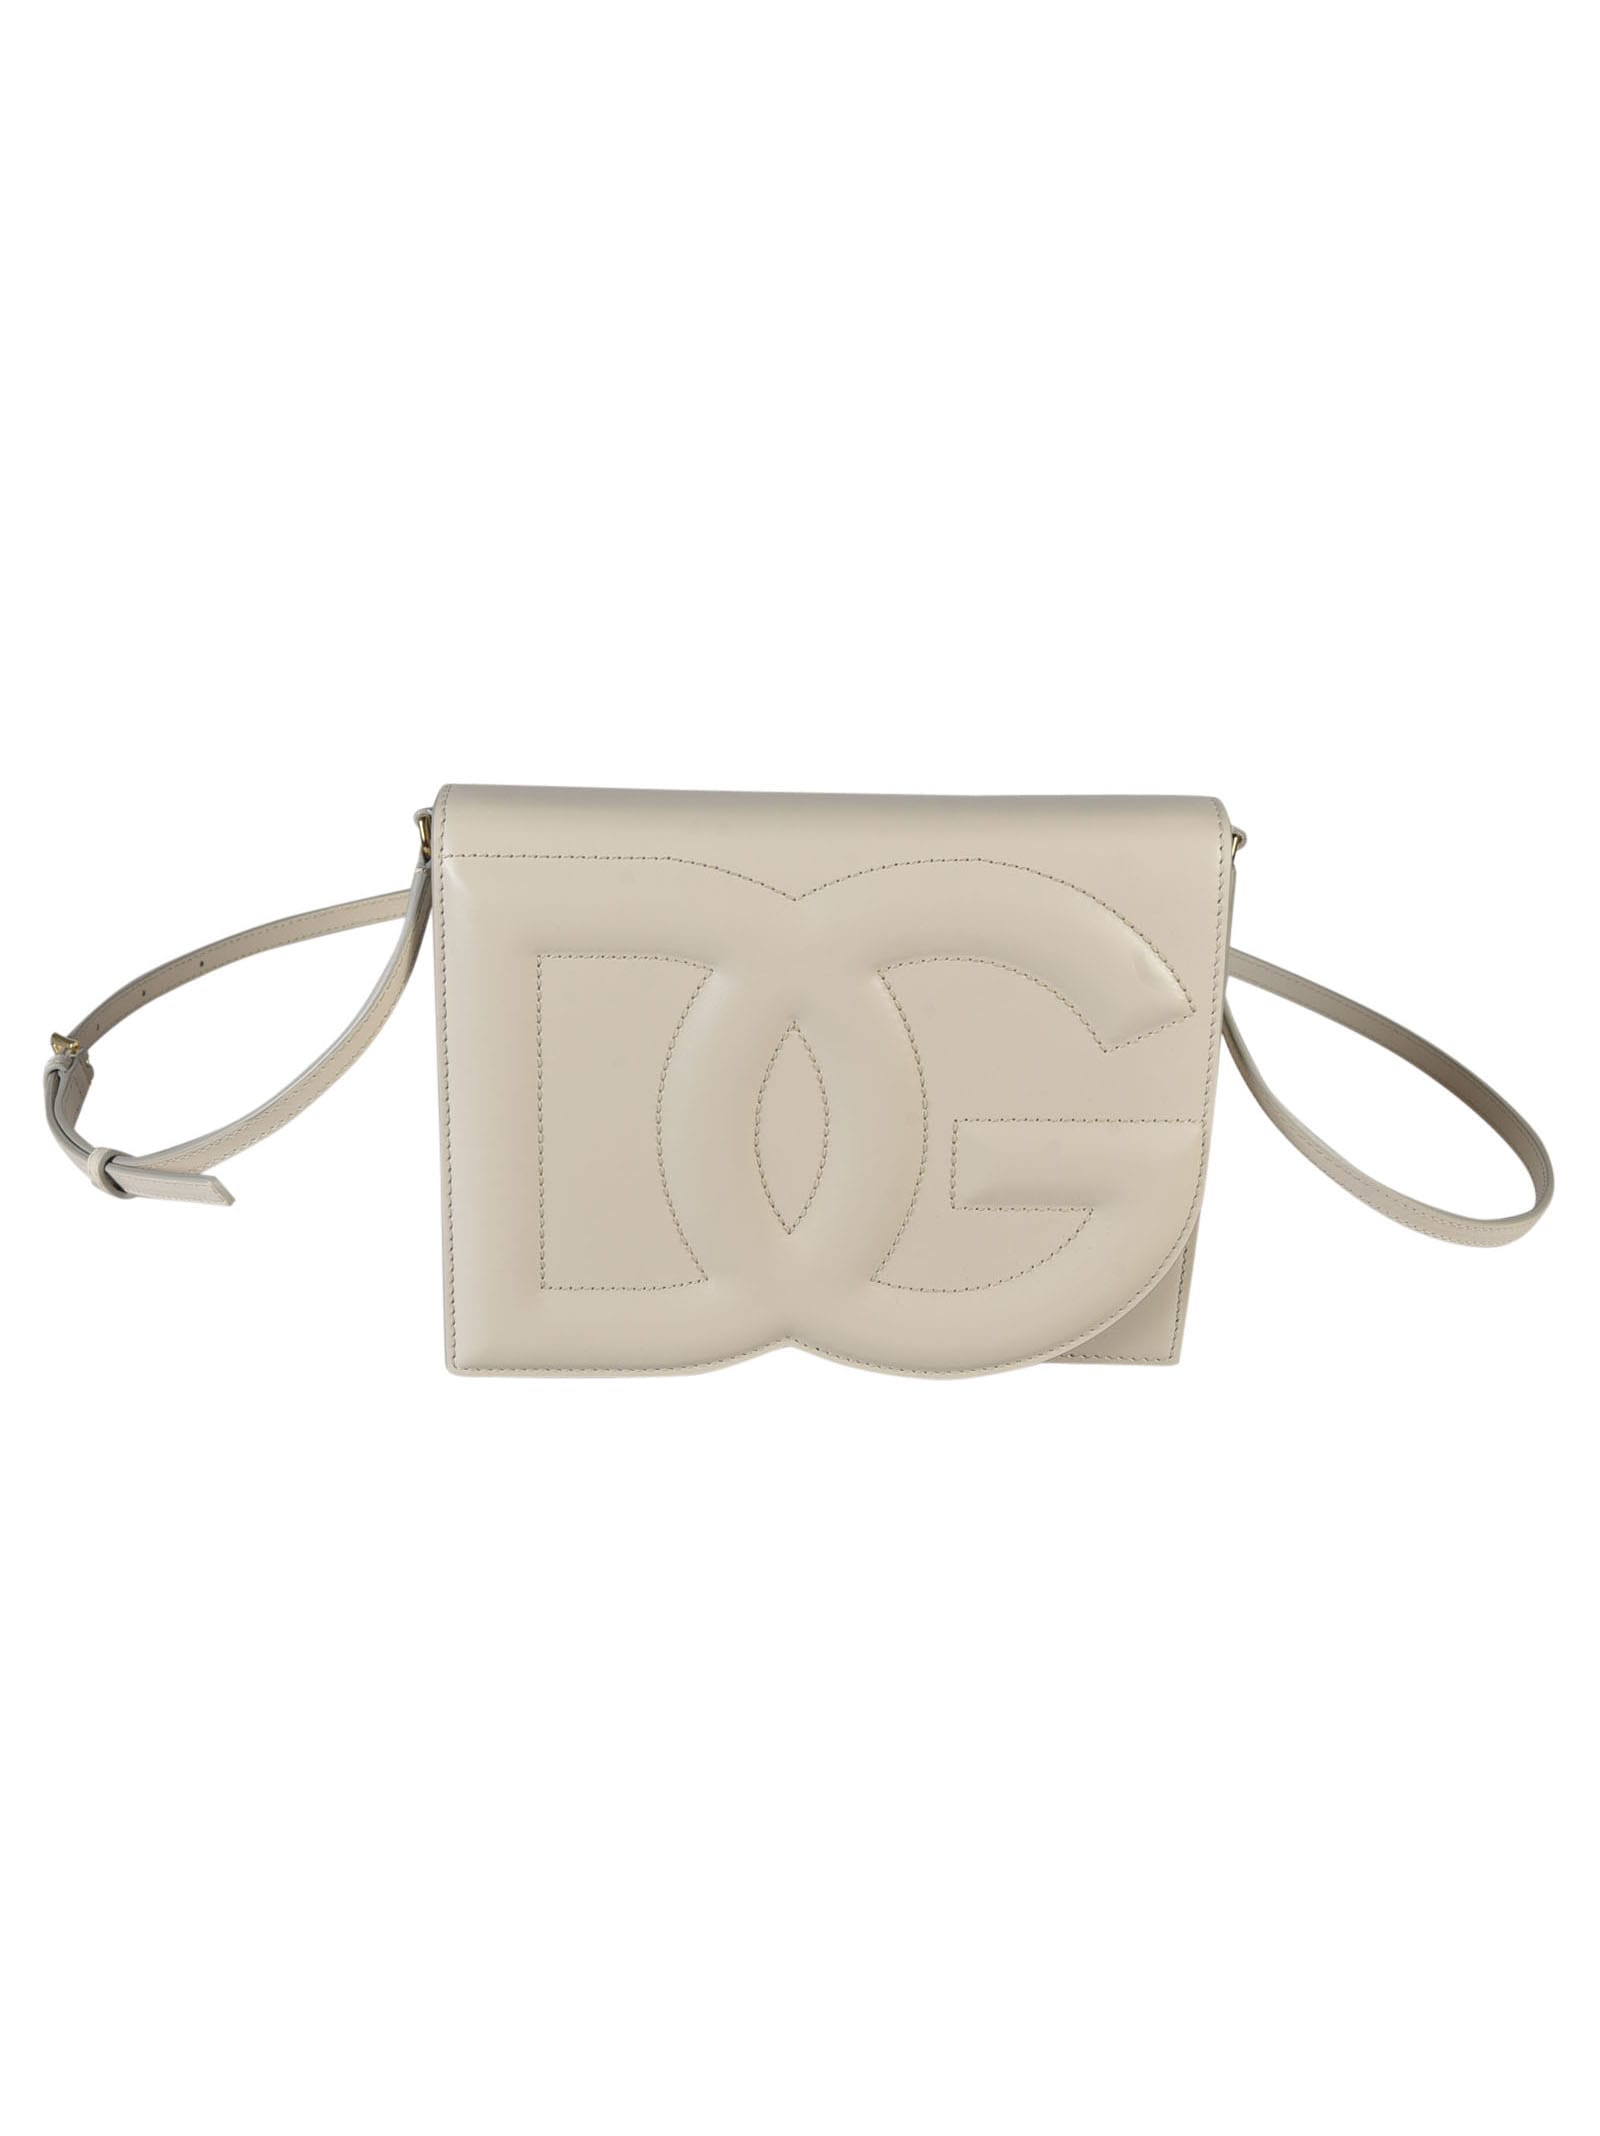 Dolce & Gabbana Dg Embossed Shoulder Bag In Brown